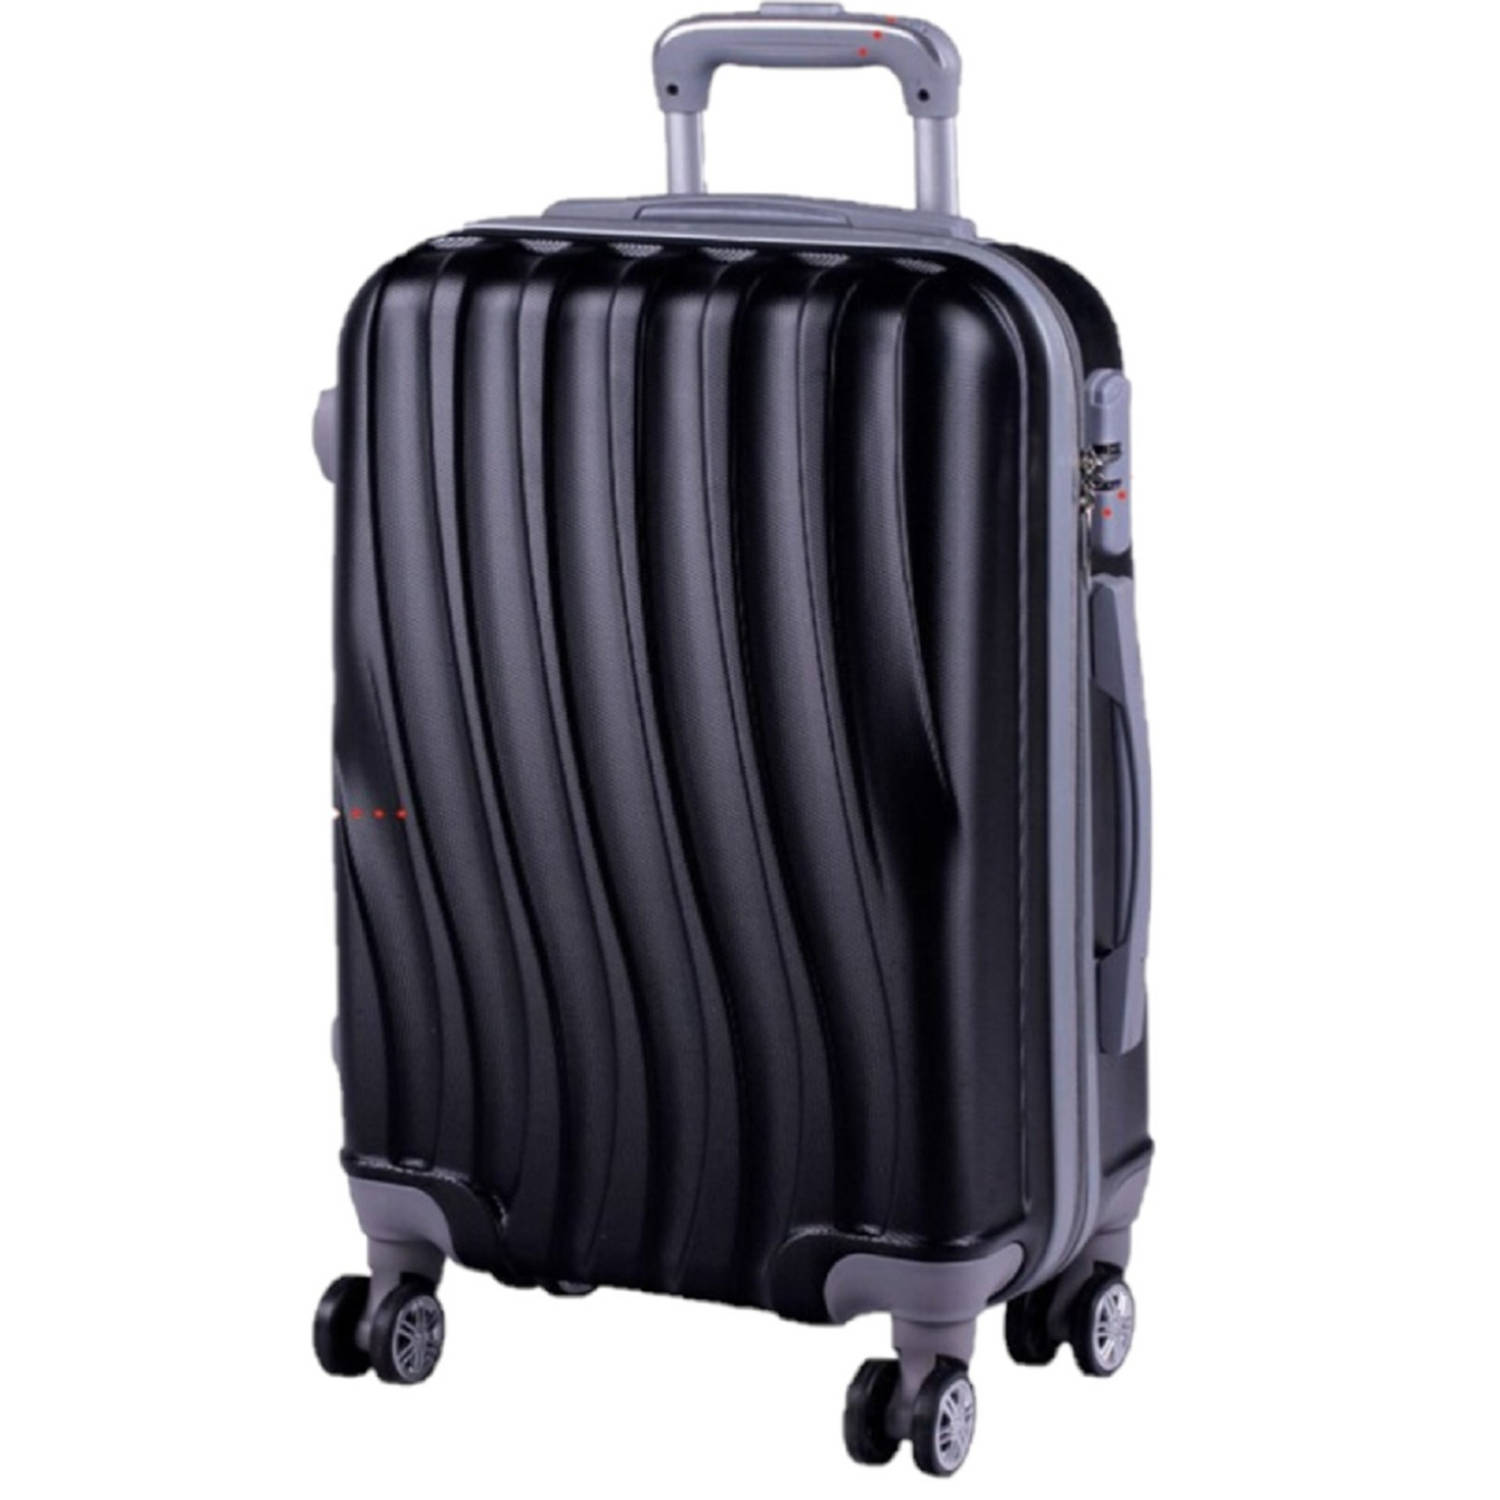 Jongleren daar ben ik het mee eens kalkoen Cabine trolley koffer met zwenkwielen 33 liter zwart - Handbagage koffers |  Blokker